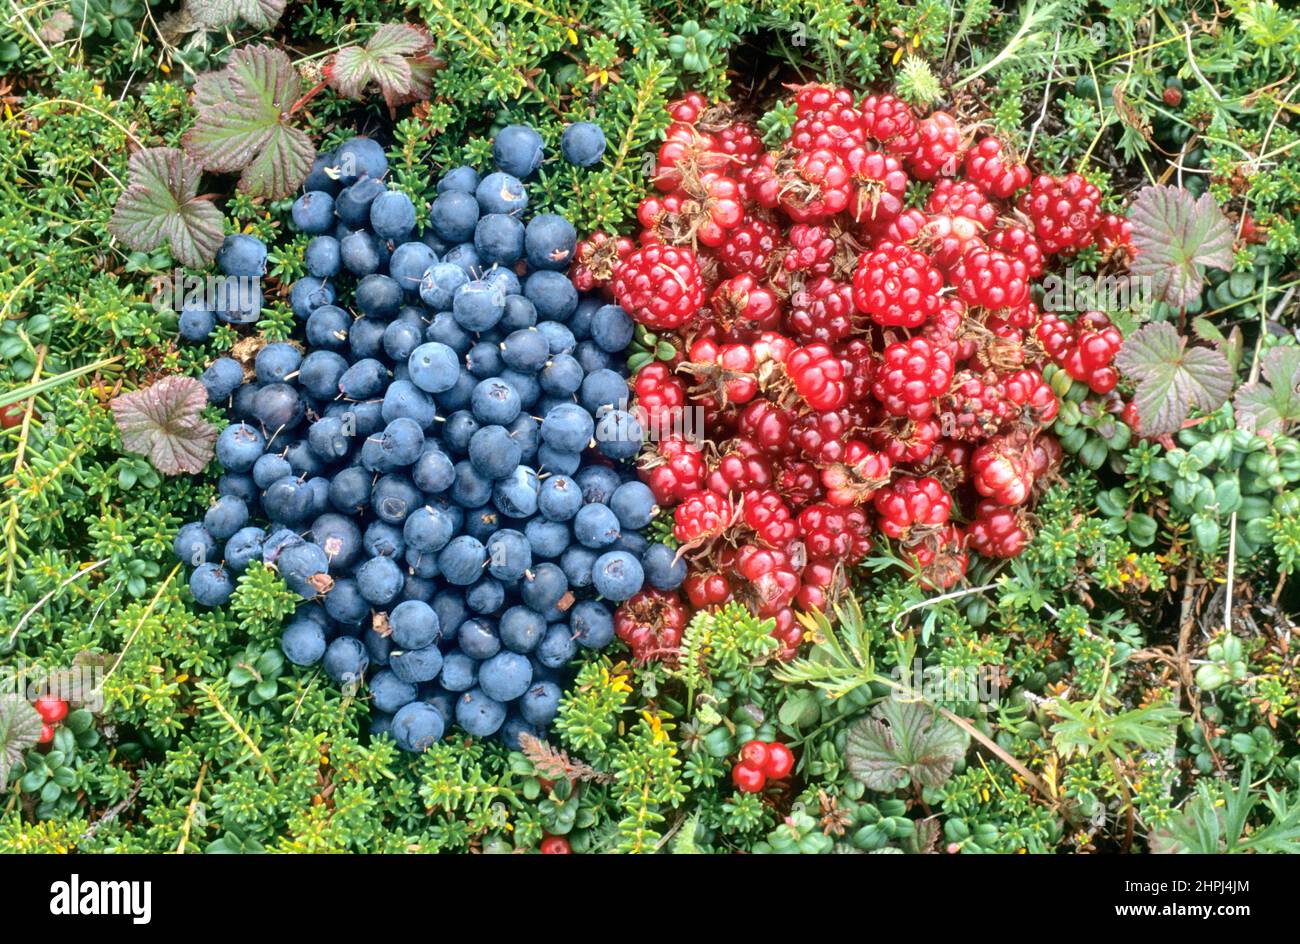 Pile de bleuets de l'Alaska (Vaccinium uliginosum) et de baies de nagoon (Rubus arcticus) sur la toundra de l'Alaska, refuge national de la faune de Becharof, Alaska Banque D'Images